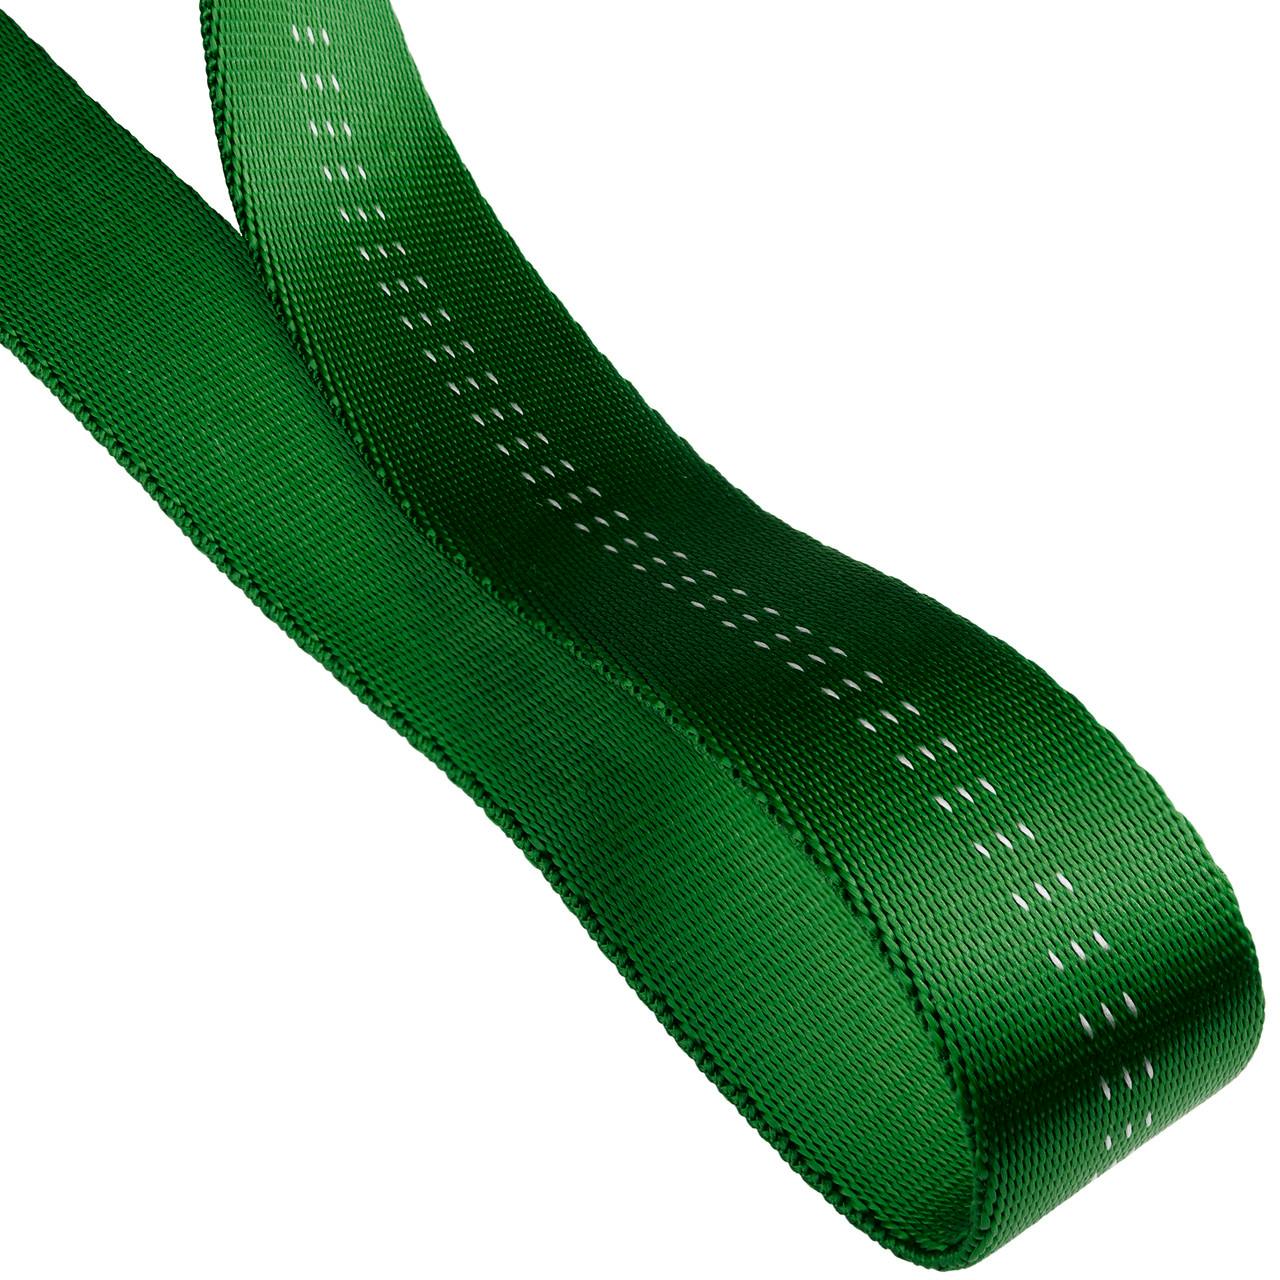 1"(25mm) Nylon Tubular Climbing Webbing Green